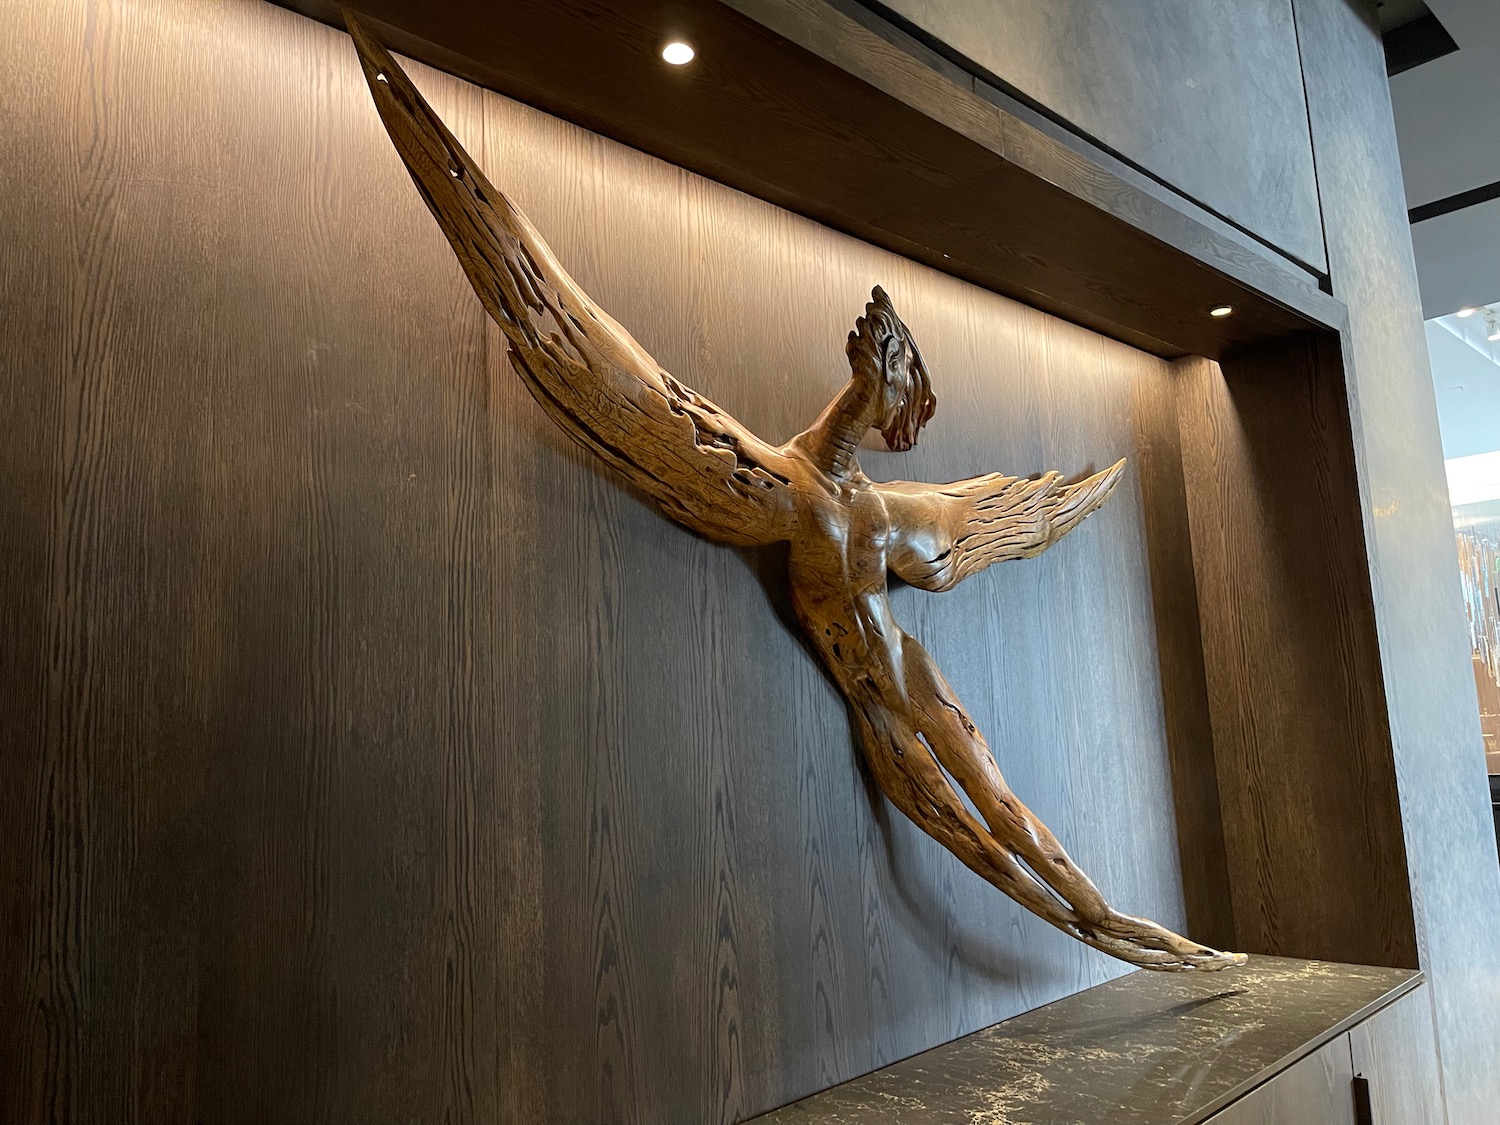 a wood sculpture of a bird on a wall